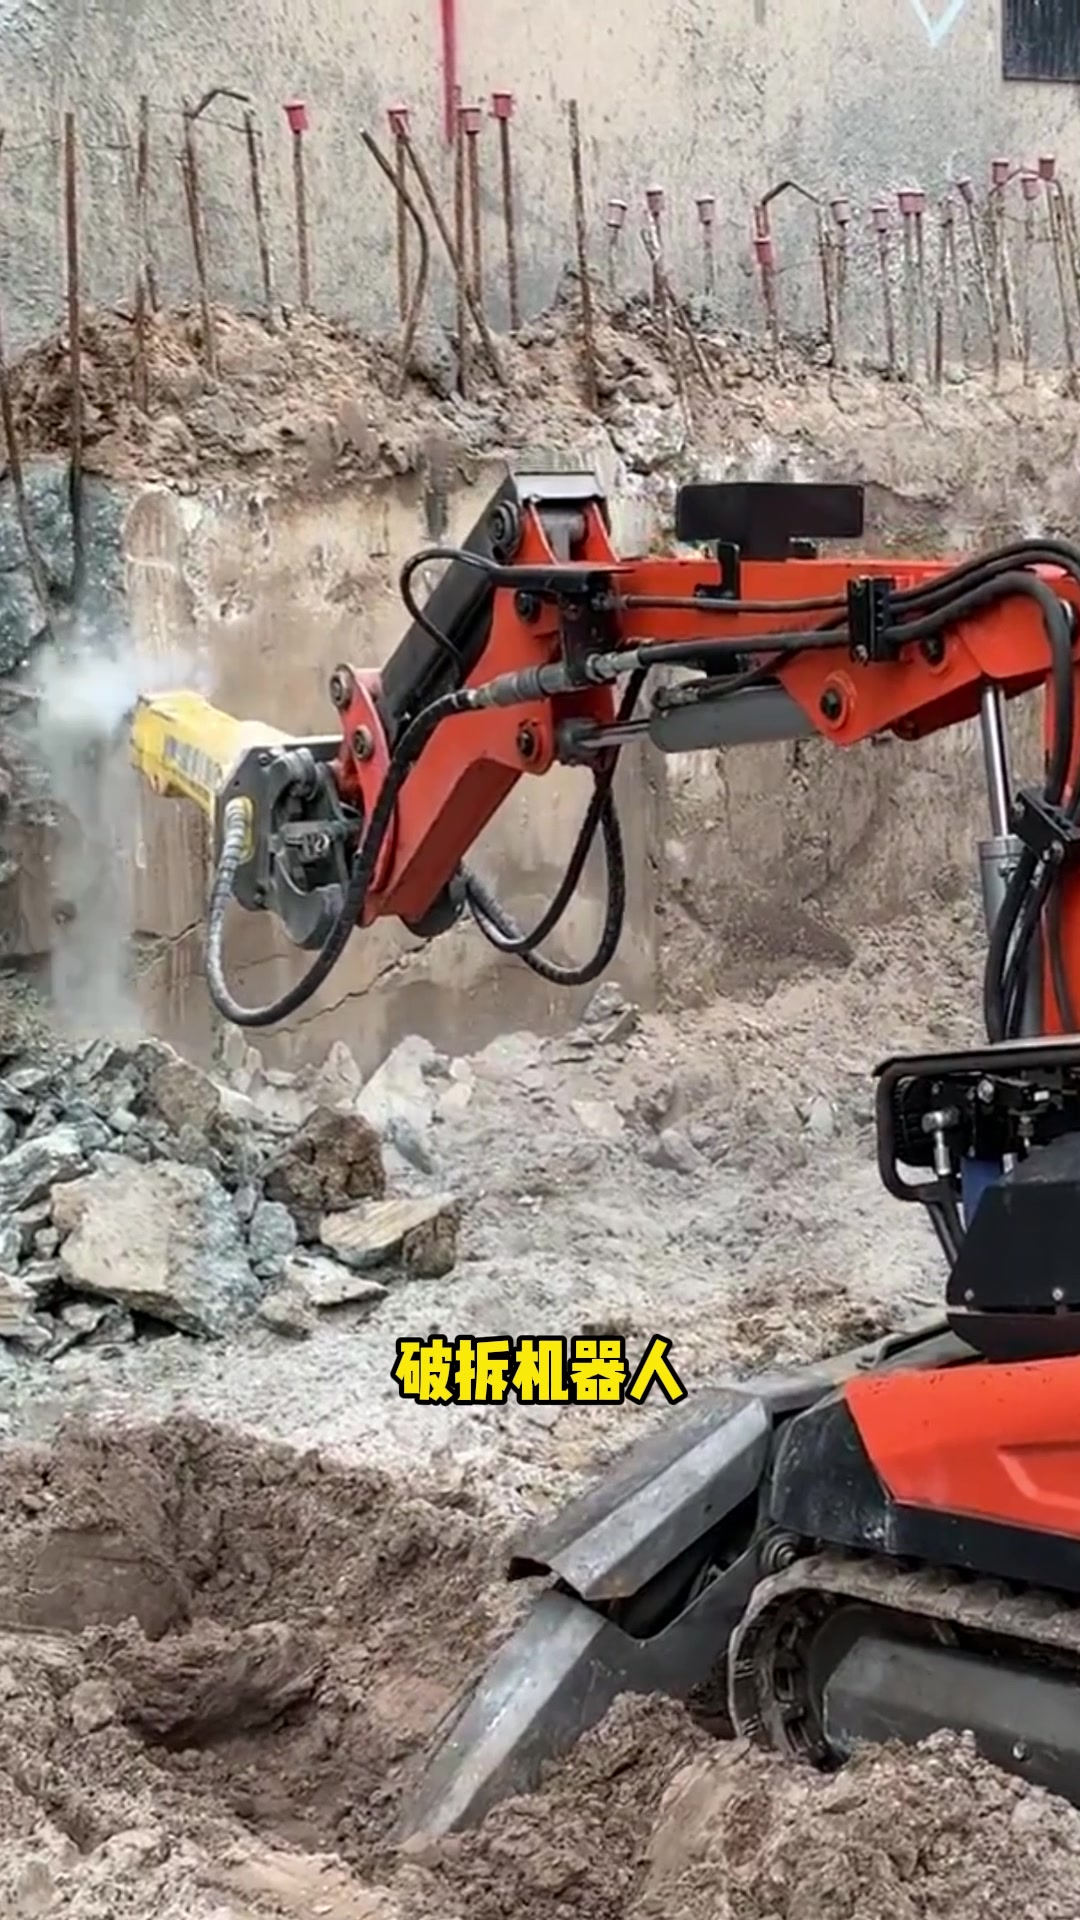 破碎机器人，专业攻克高危拆除环境-帖子图片